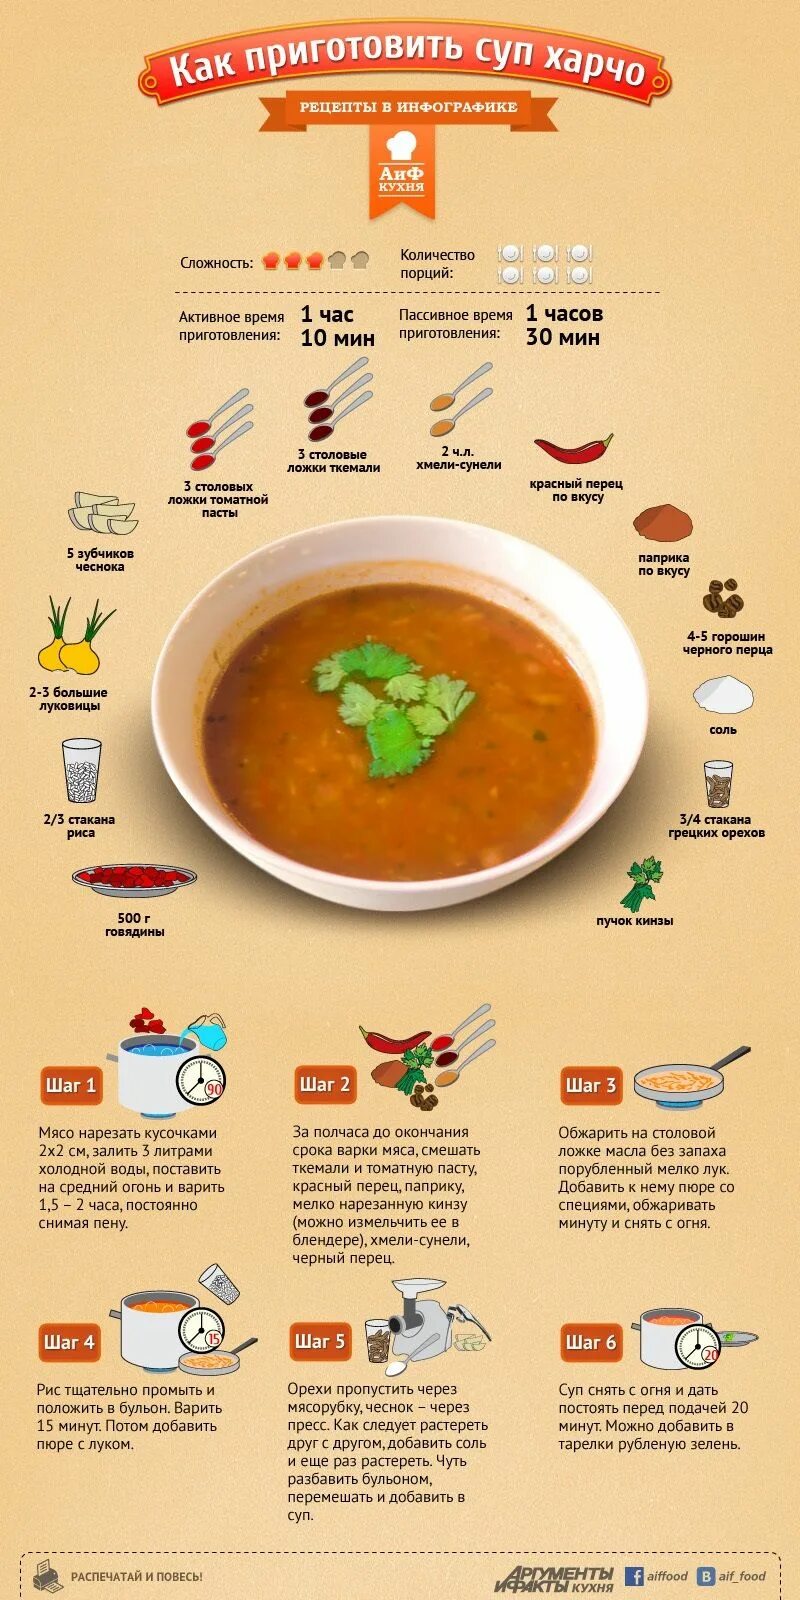 Сколько минут варится суп. Схема приготовления супа харчо. Рецептура супа харчо. Инфографика суп. Рецепты в картинках.